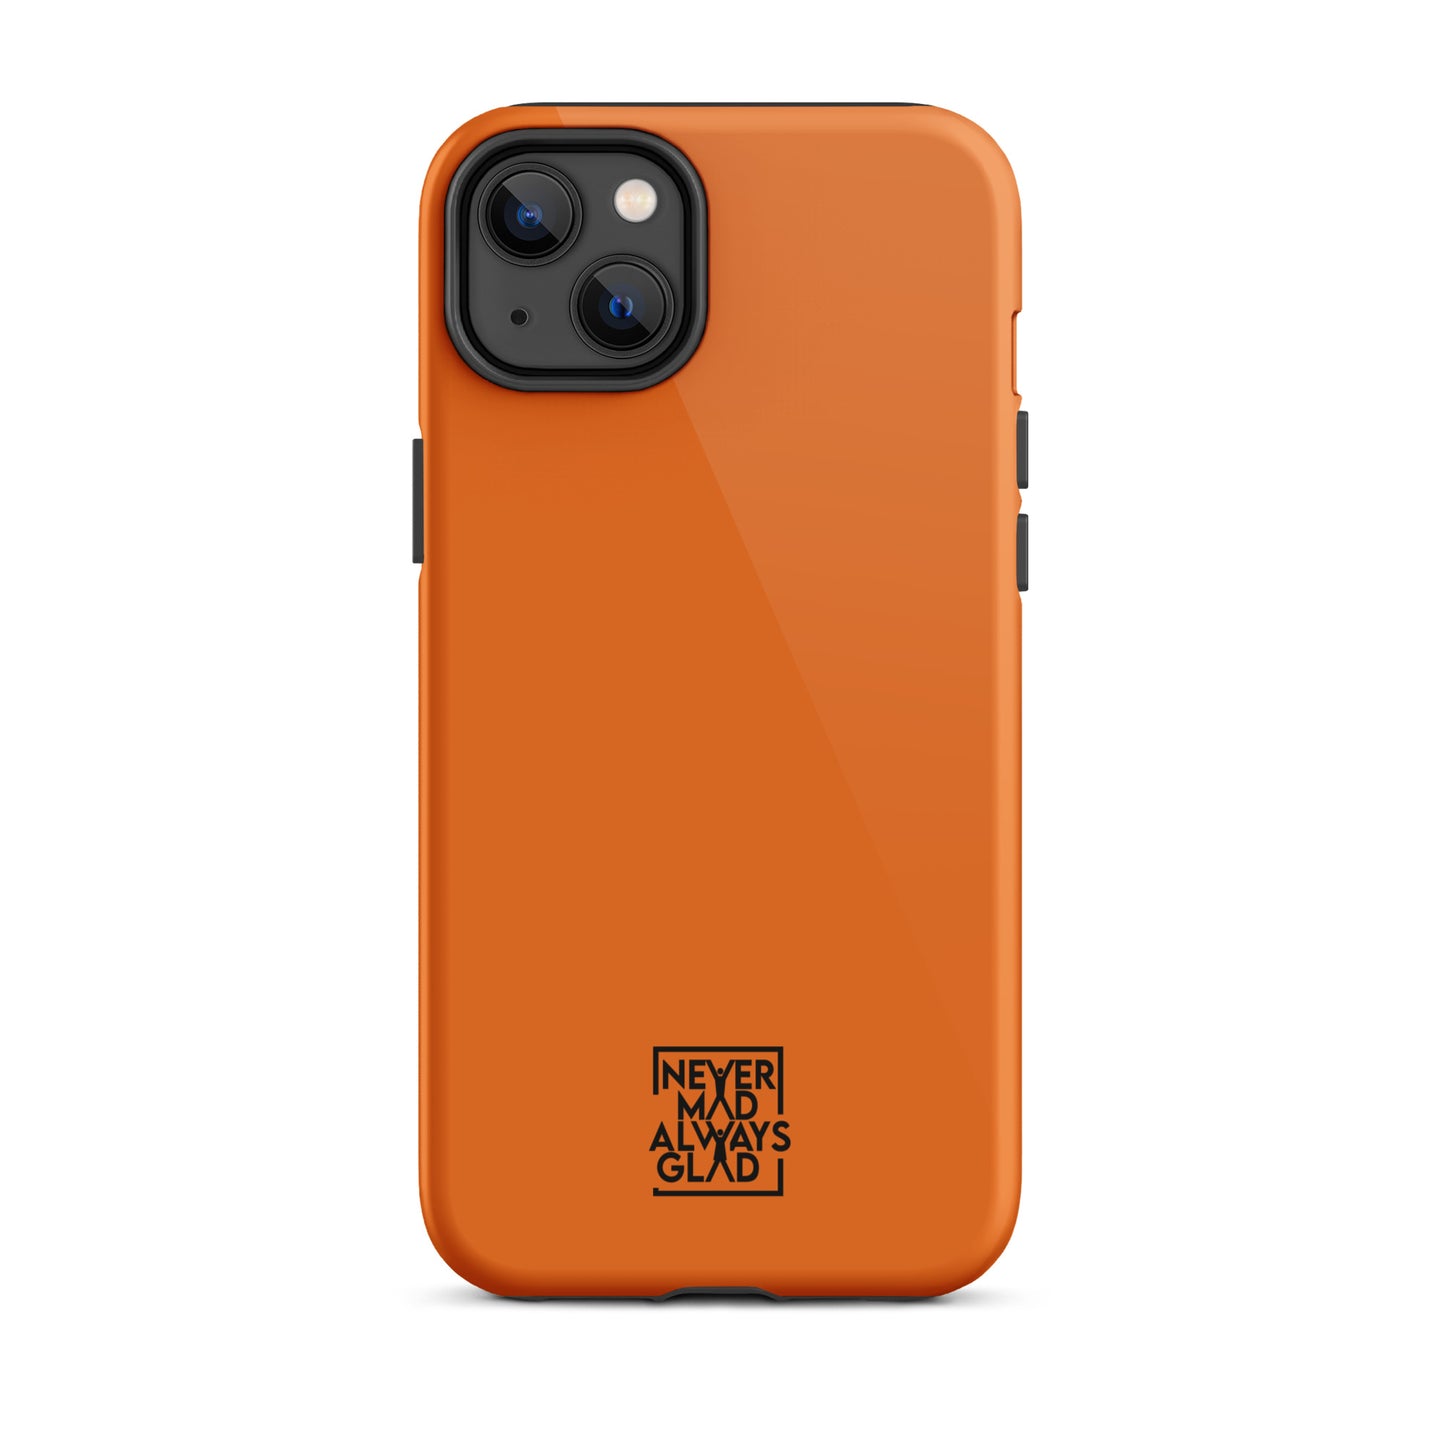 NMAG Orange Tough iPhone case